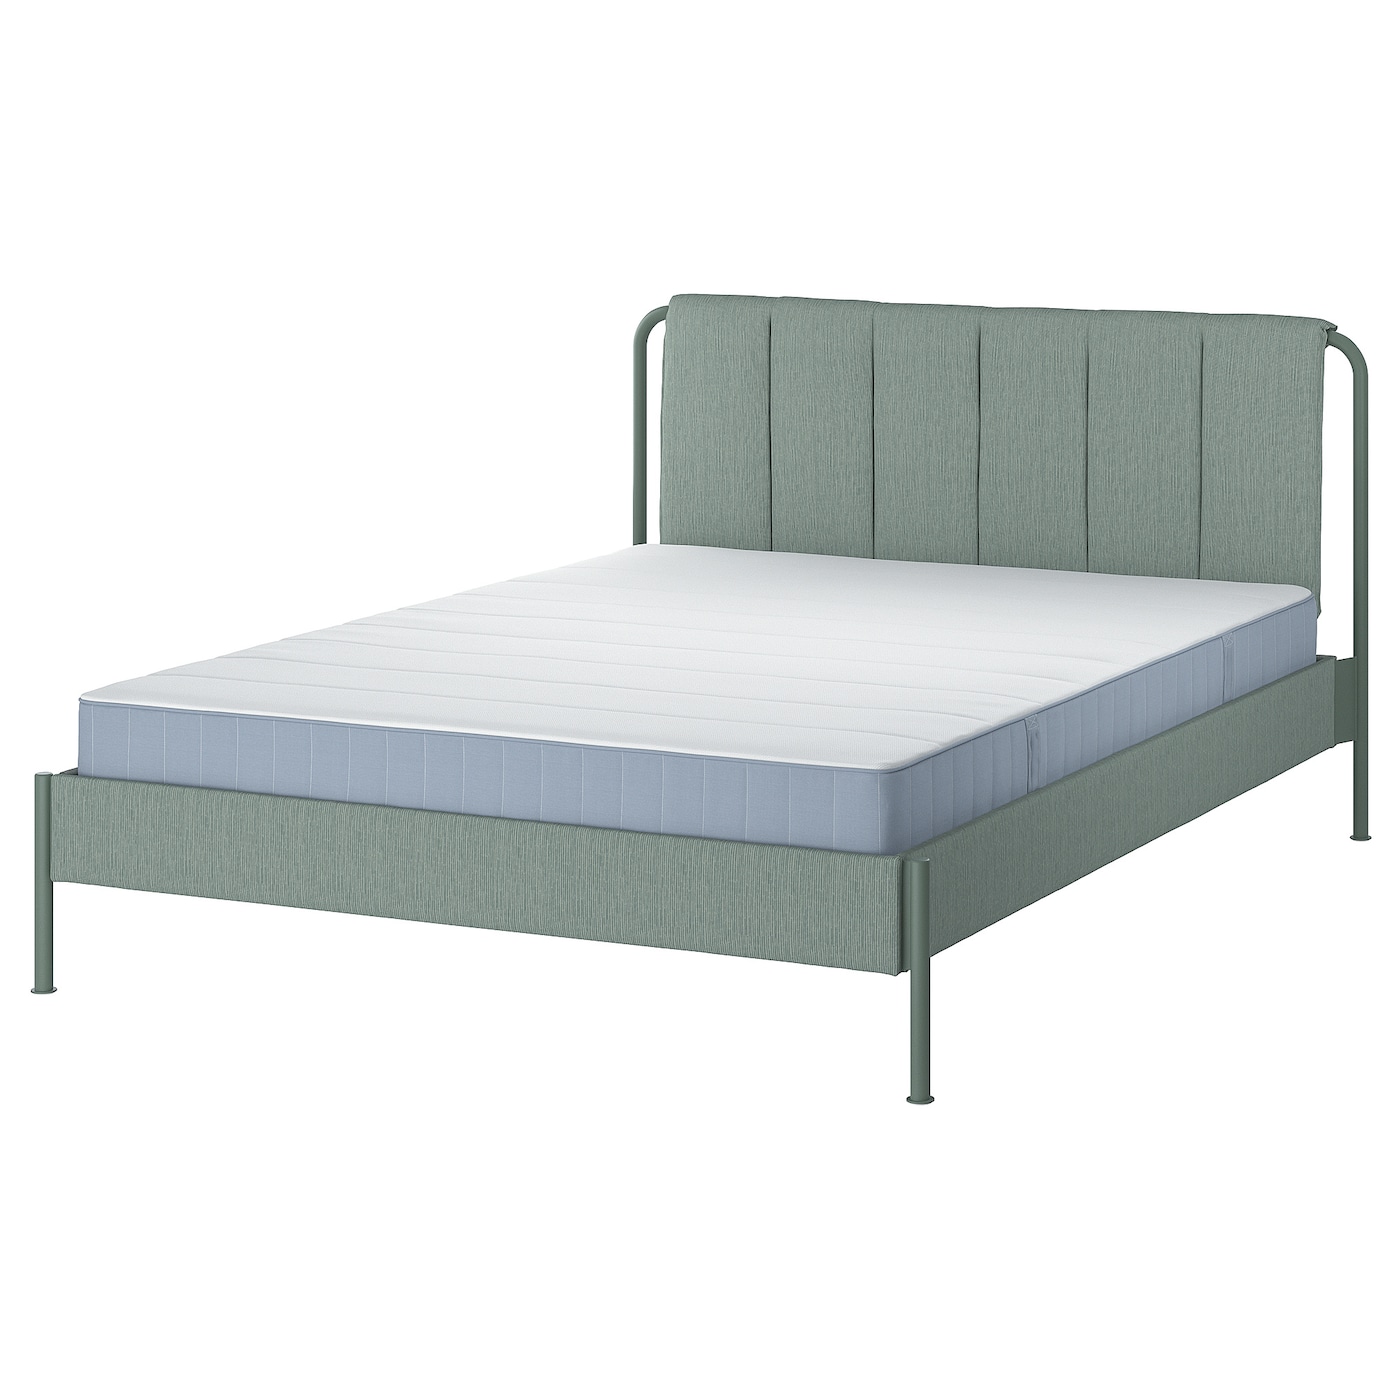 Каркас кровати мягкий с матрасом - IKEA TÄLLÅSEN/TALLASEN, 200х140 см, матрас жесткий, серо-зеленый, ТЭЛЛАСОН ИКЕА